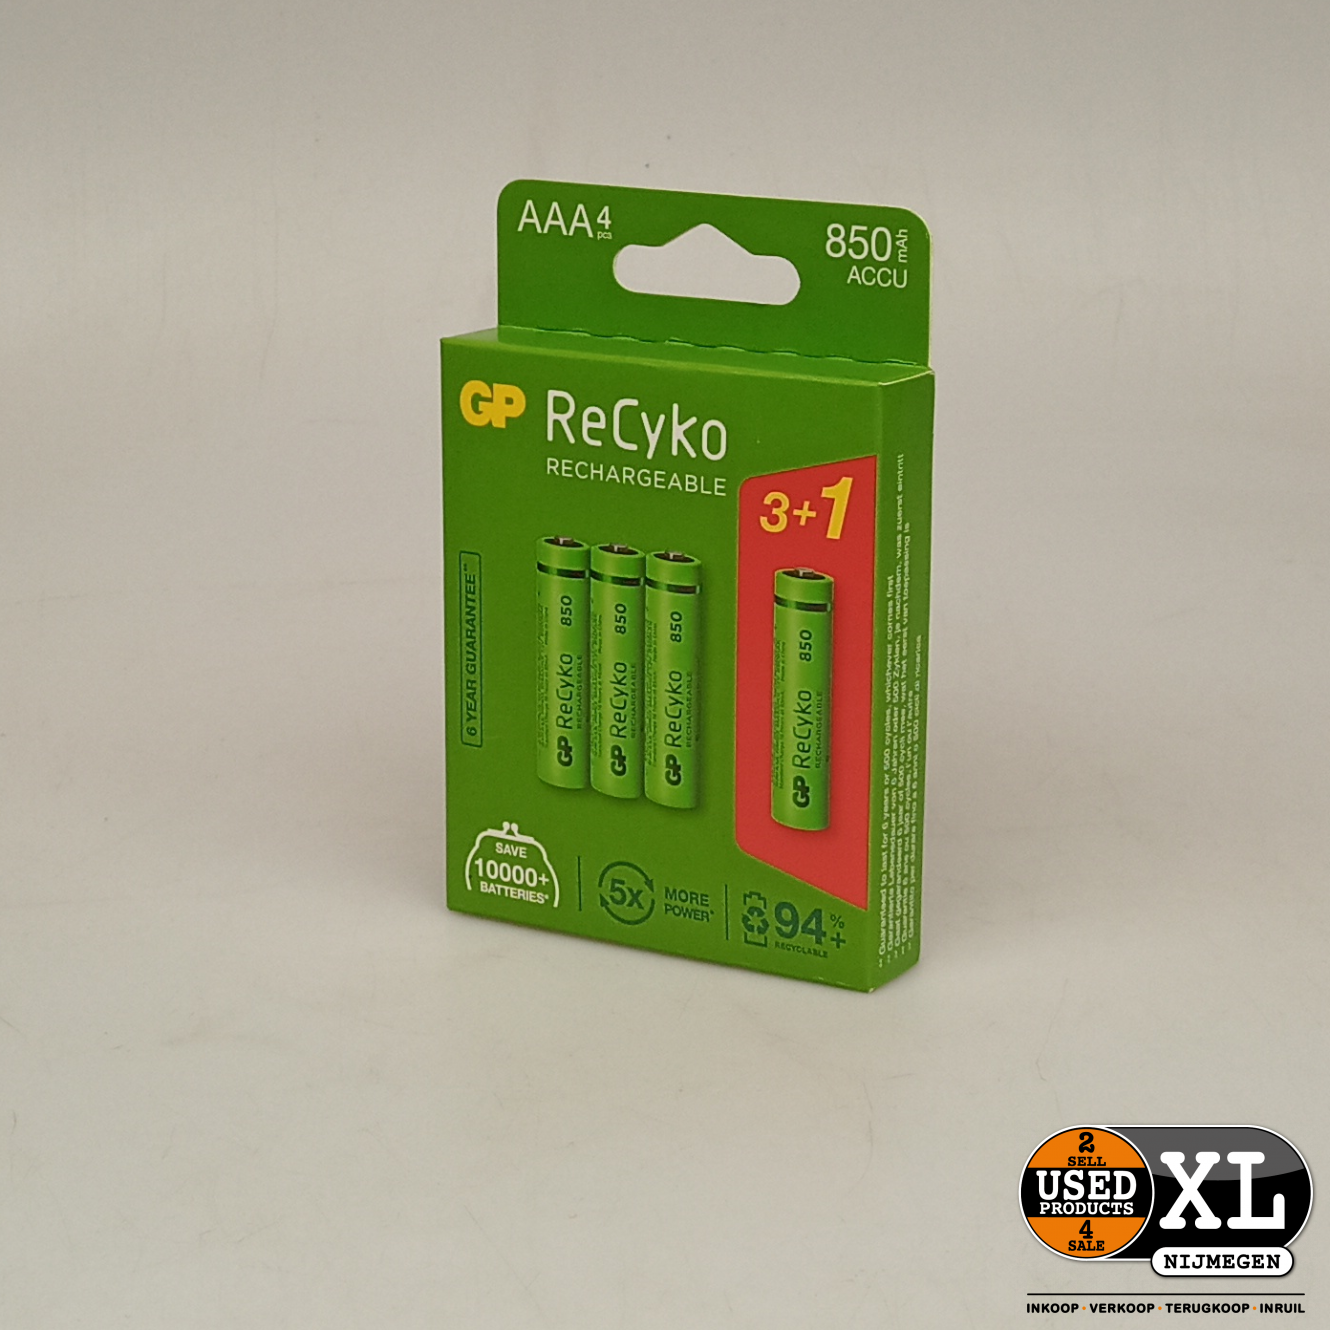 Reinig de vloer vanavond niet GP Recyko AAA Oplaadbare Batterijen | 4 stuks - Used Products Nijmegen XL